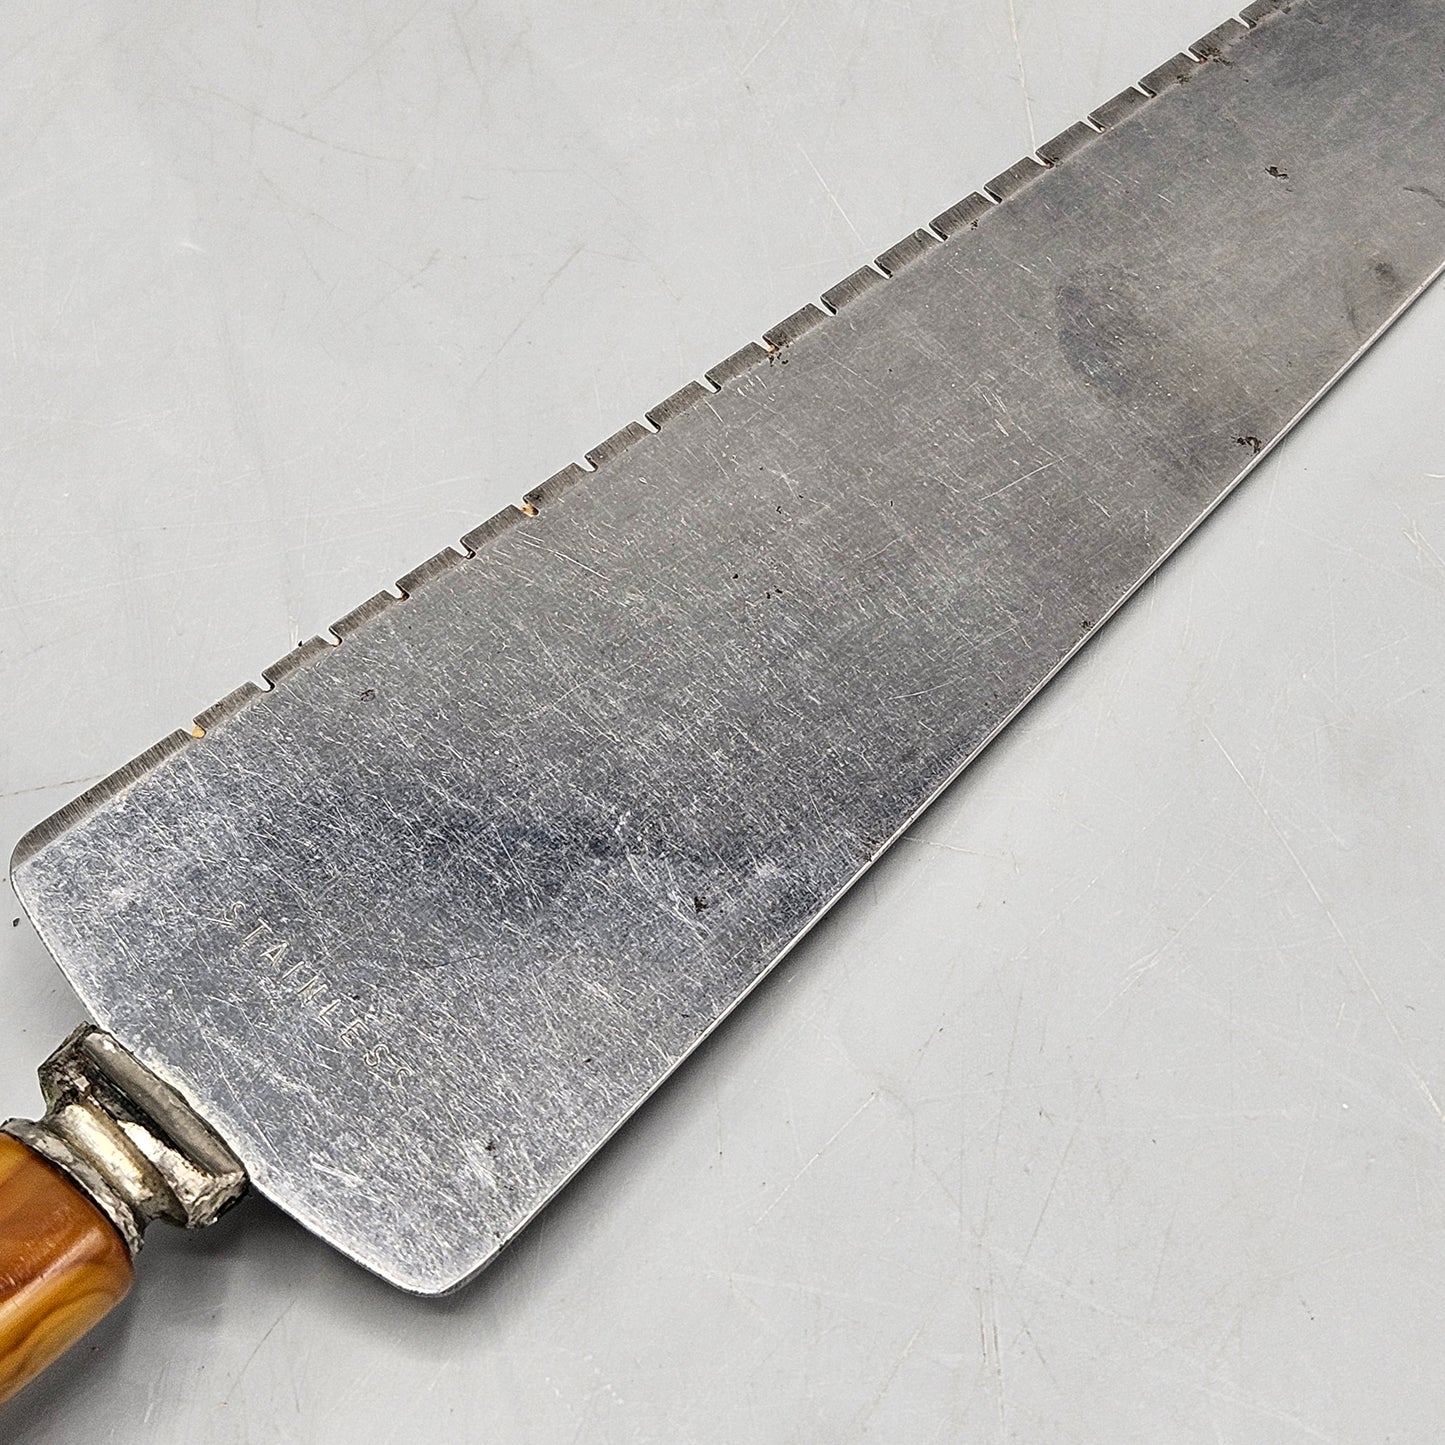 Vintage Knife Sharpener & Cake Cutter with Bakelite Handles